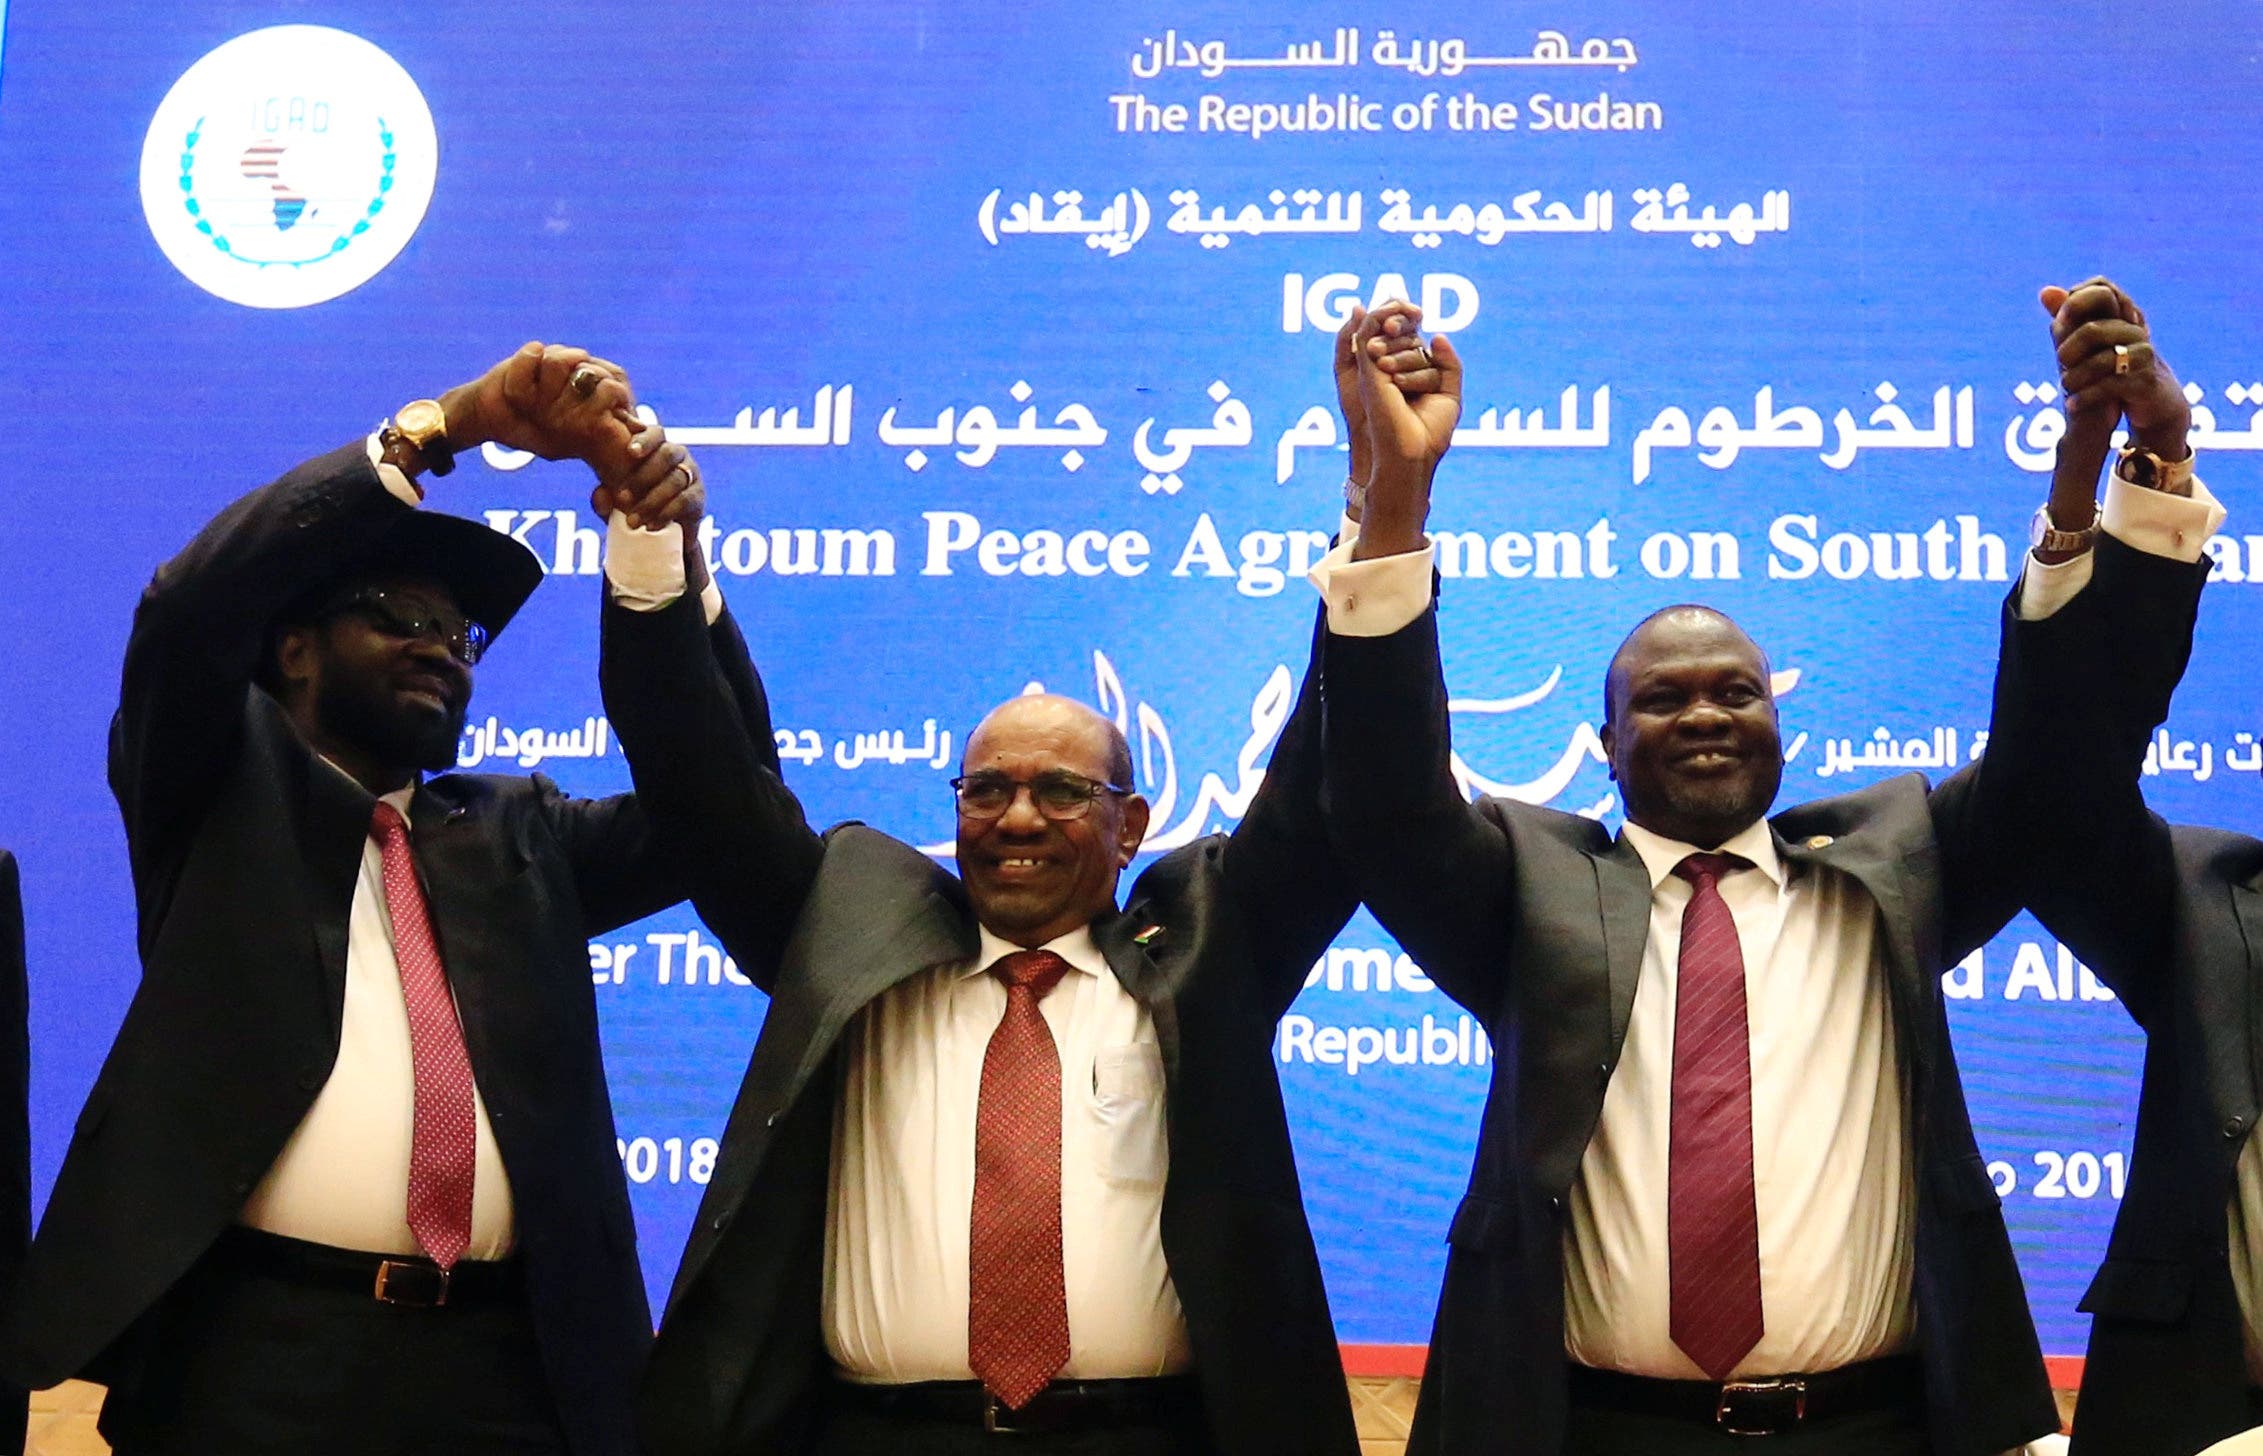 الإعلان عن اتفاق السلام في يونيو 2018 في الخرطوم بحضور الرئيس السوداني السابق عمر البشير